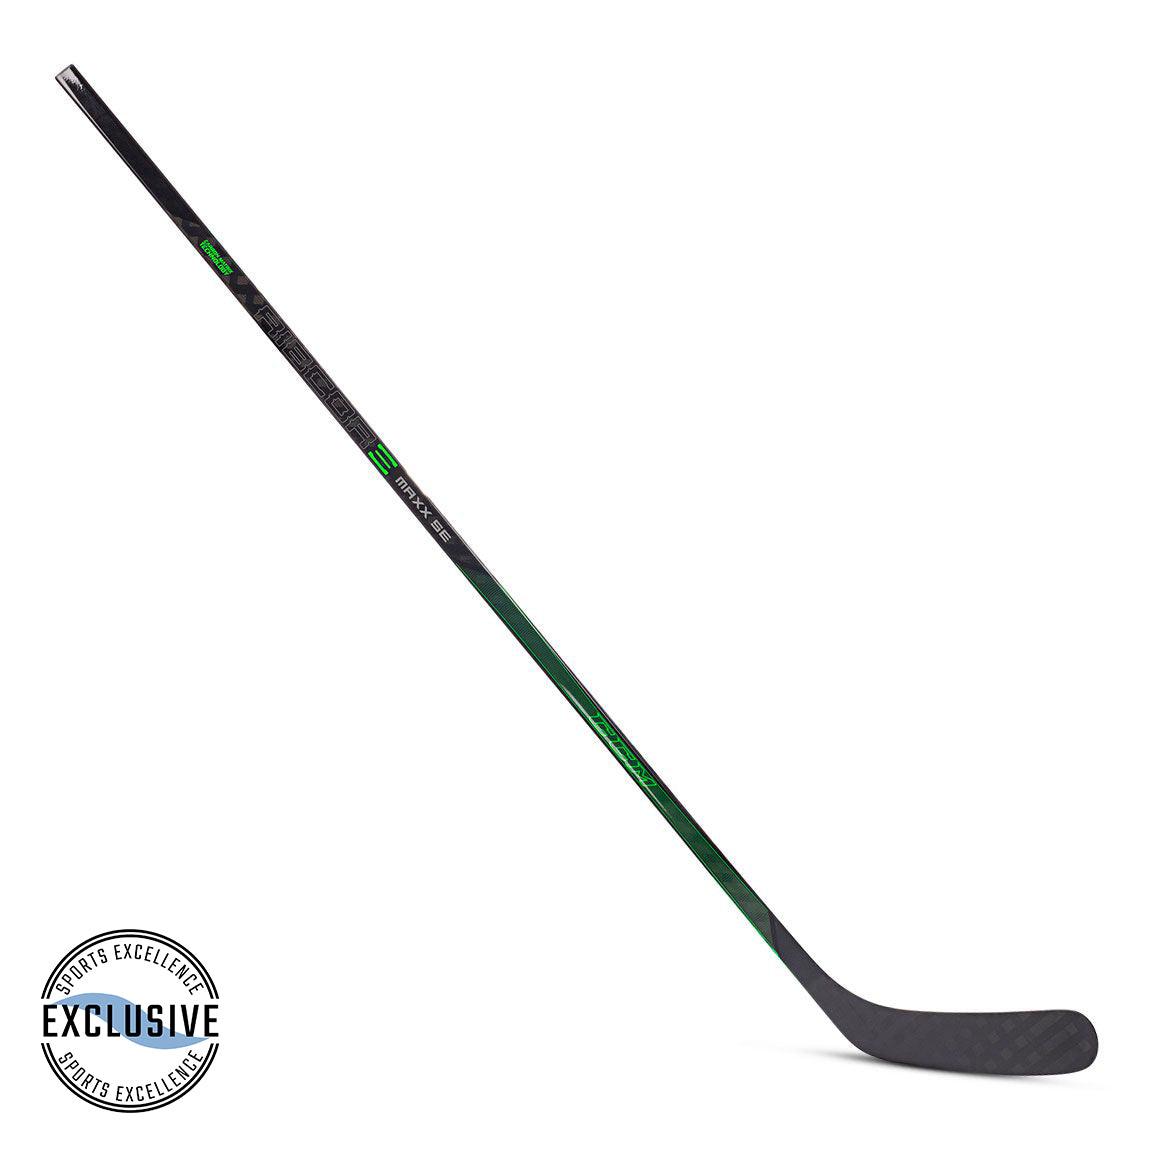 Ribcor Maxx SE Hockey Stick - Intermediate